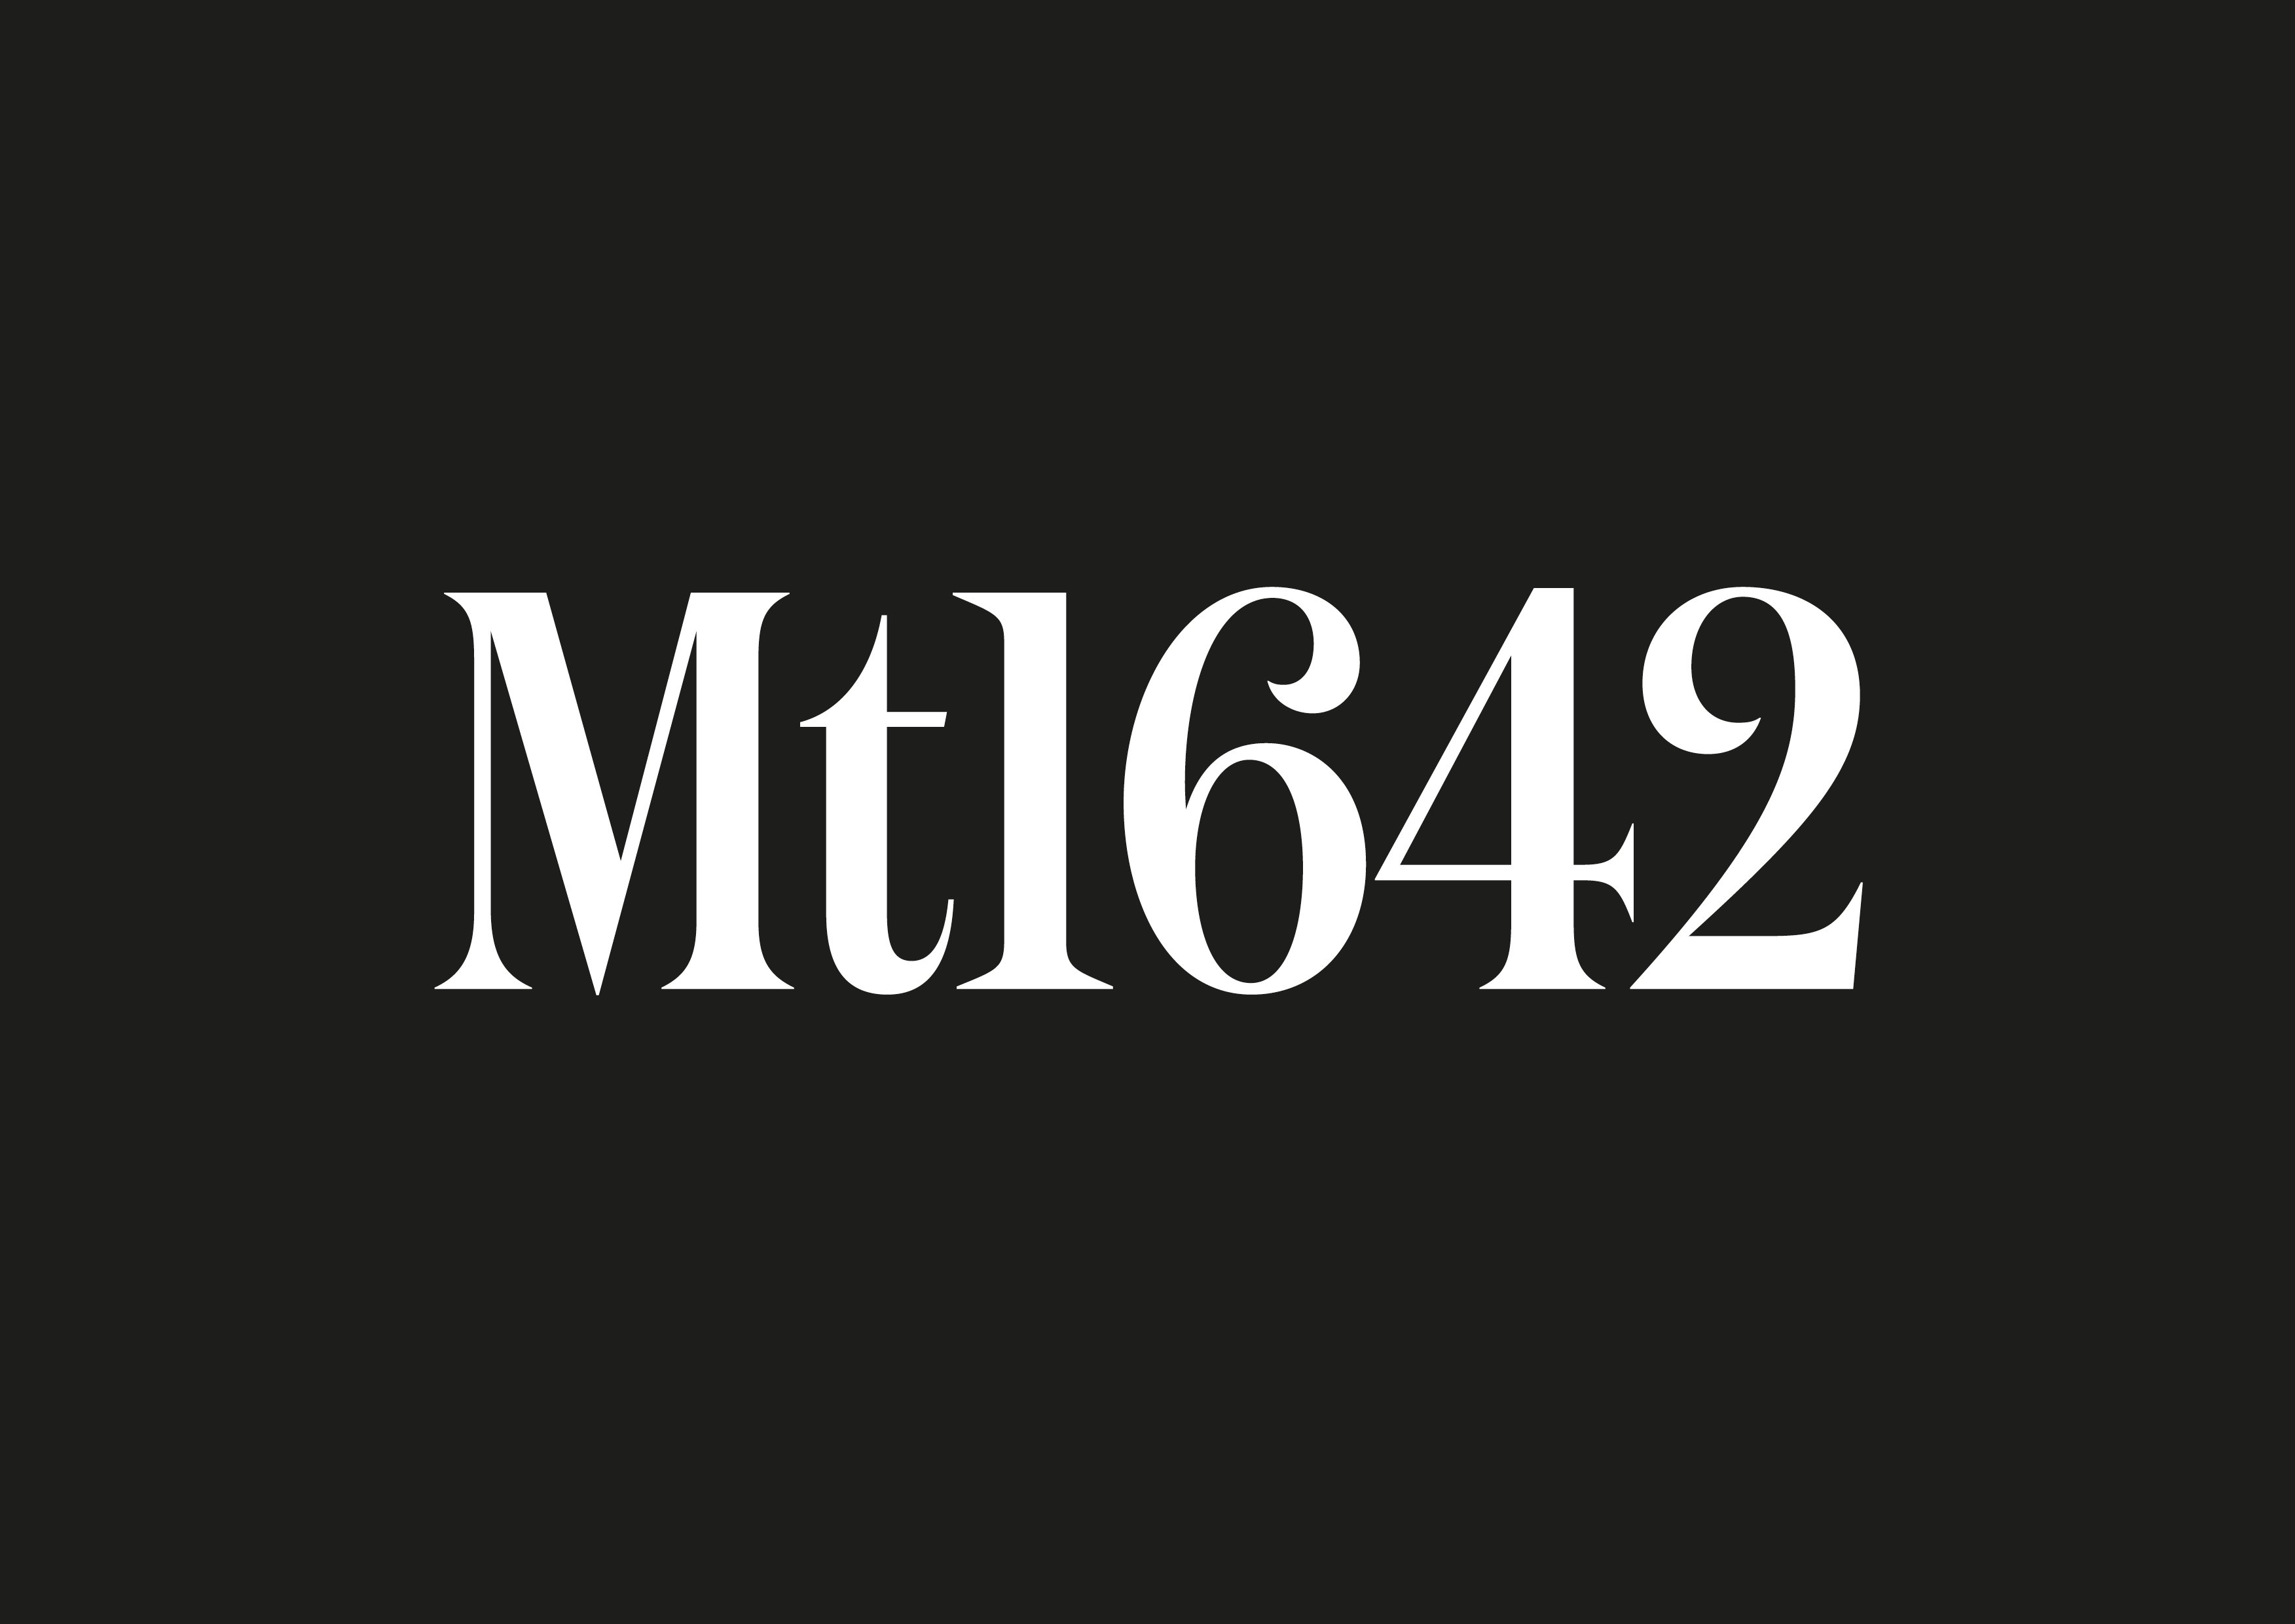 Mt1642 parle de Montréal en mettant en lumière la gastronomie, la culture, les quartiers, les festivals et les bonnes adresses! Une publication de l'AHGM.